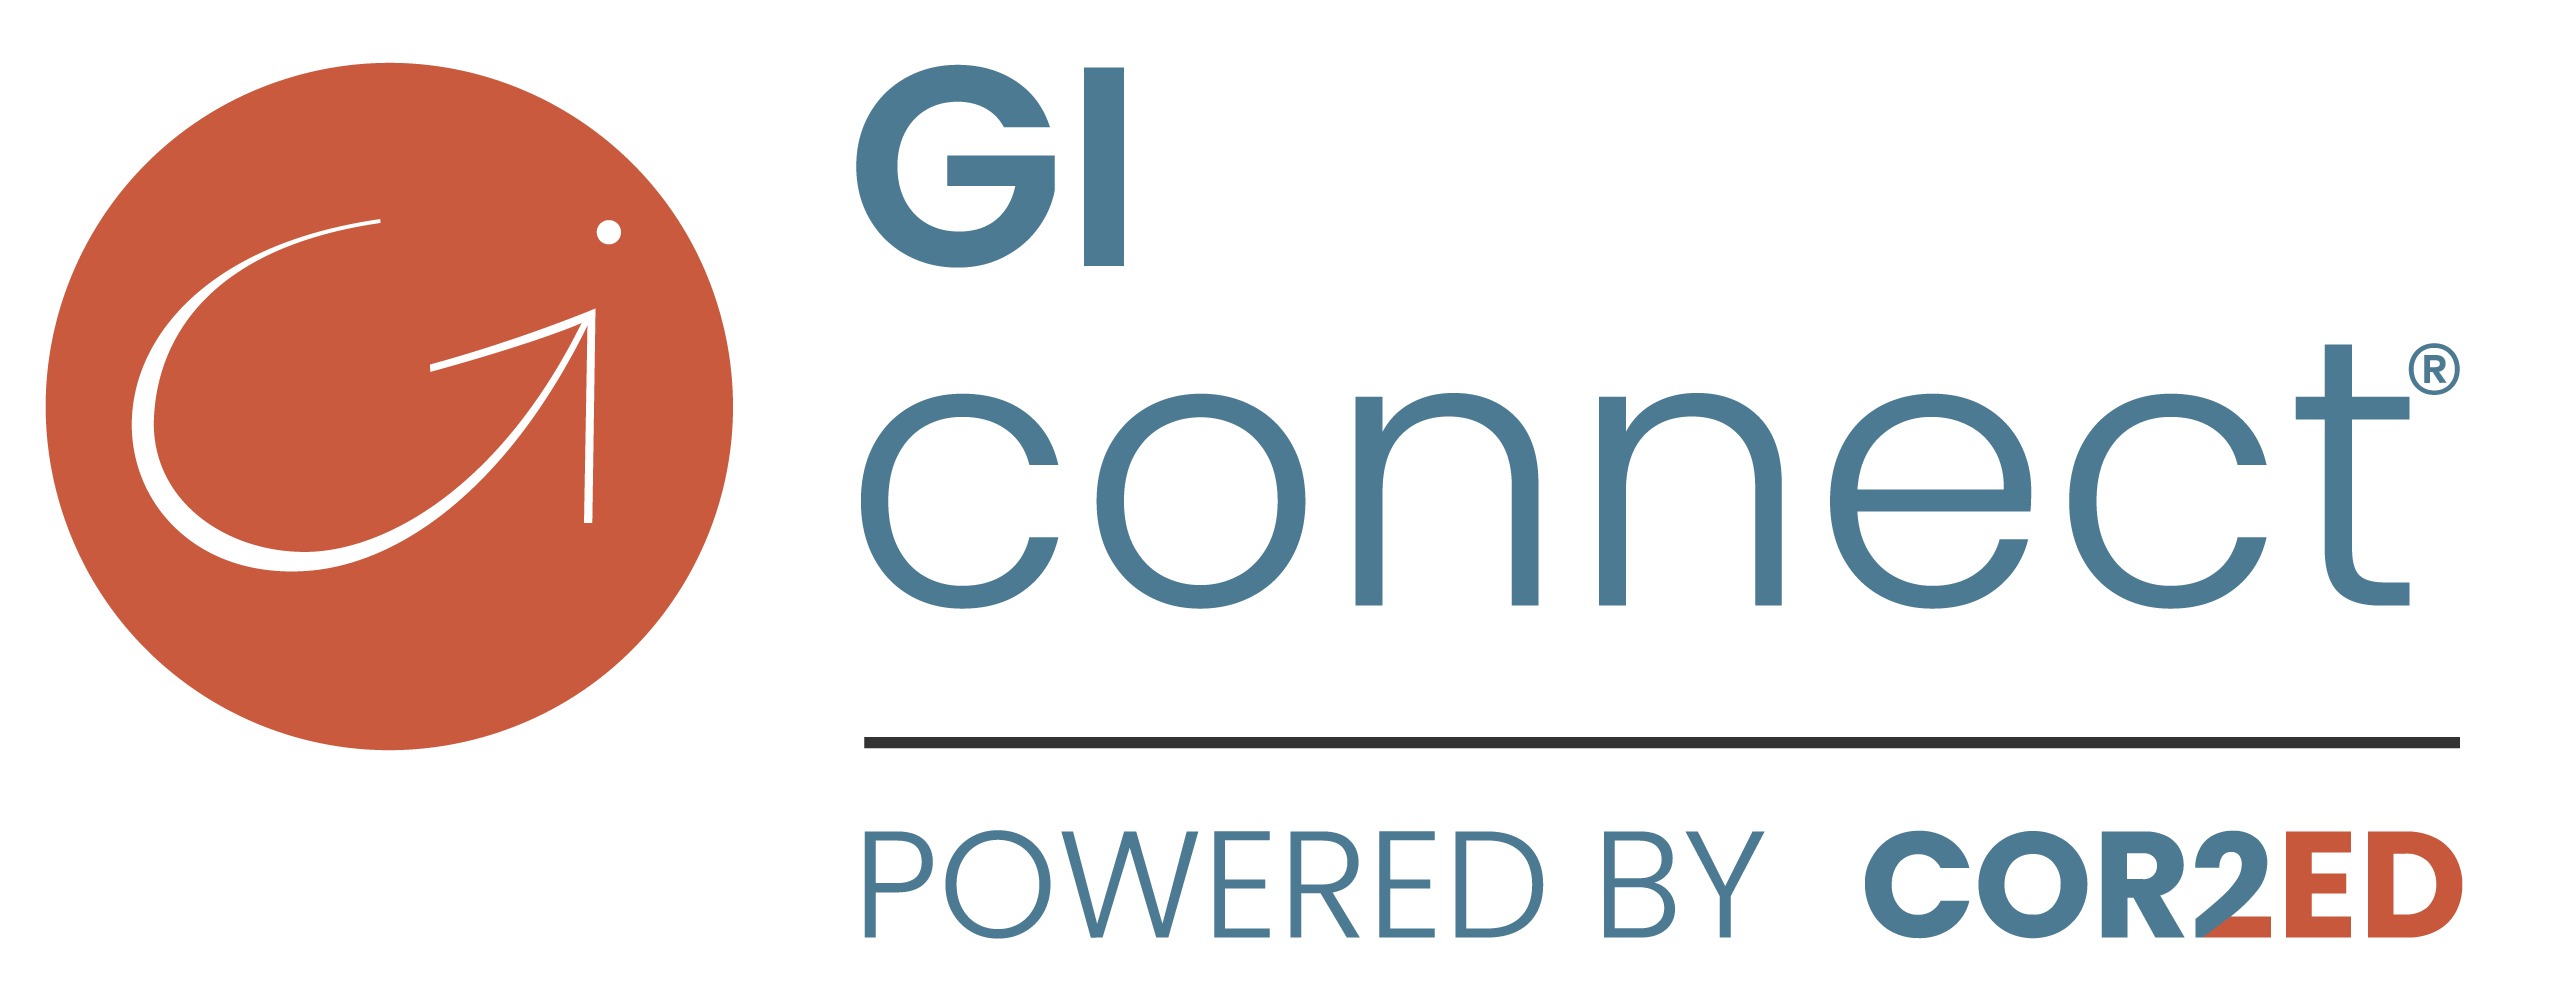 GI CONNECT